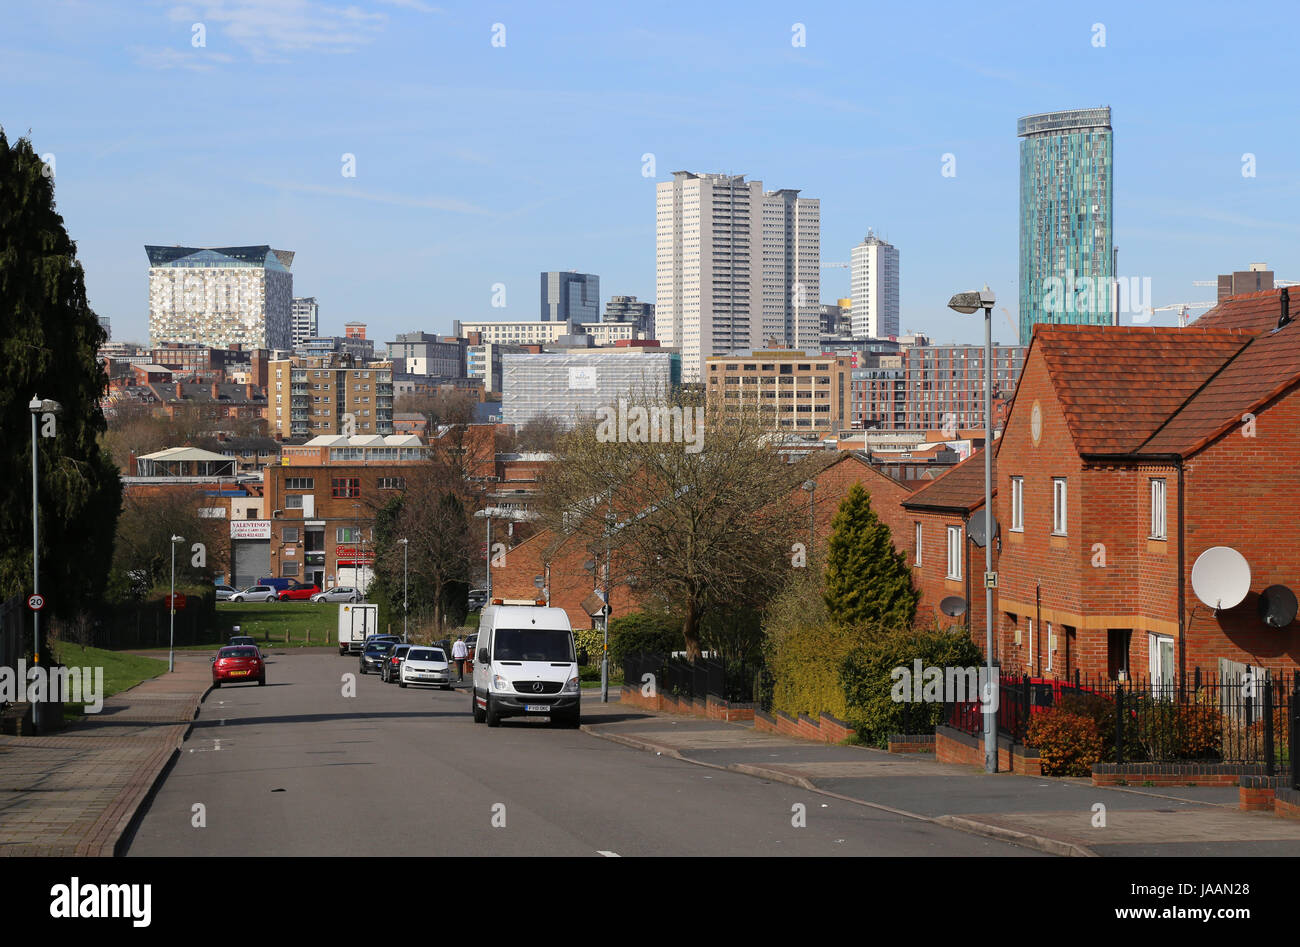 Blick auf die innere Stadt.  Angelina-Straße, Highgate, Birmingham, UK, im März 2017.  Die Skyline von Birmingham Stadtzentrum ist im Hintergrund sichtbar. Stockfoto